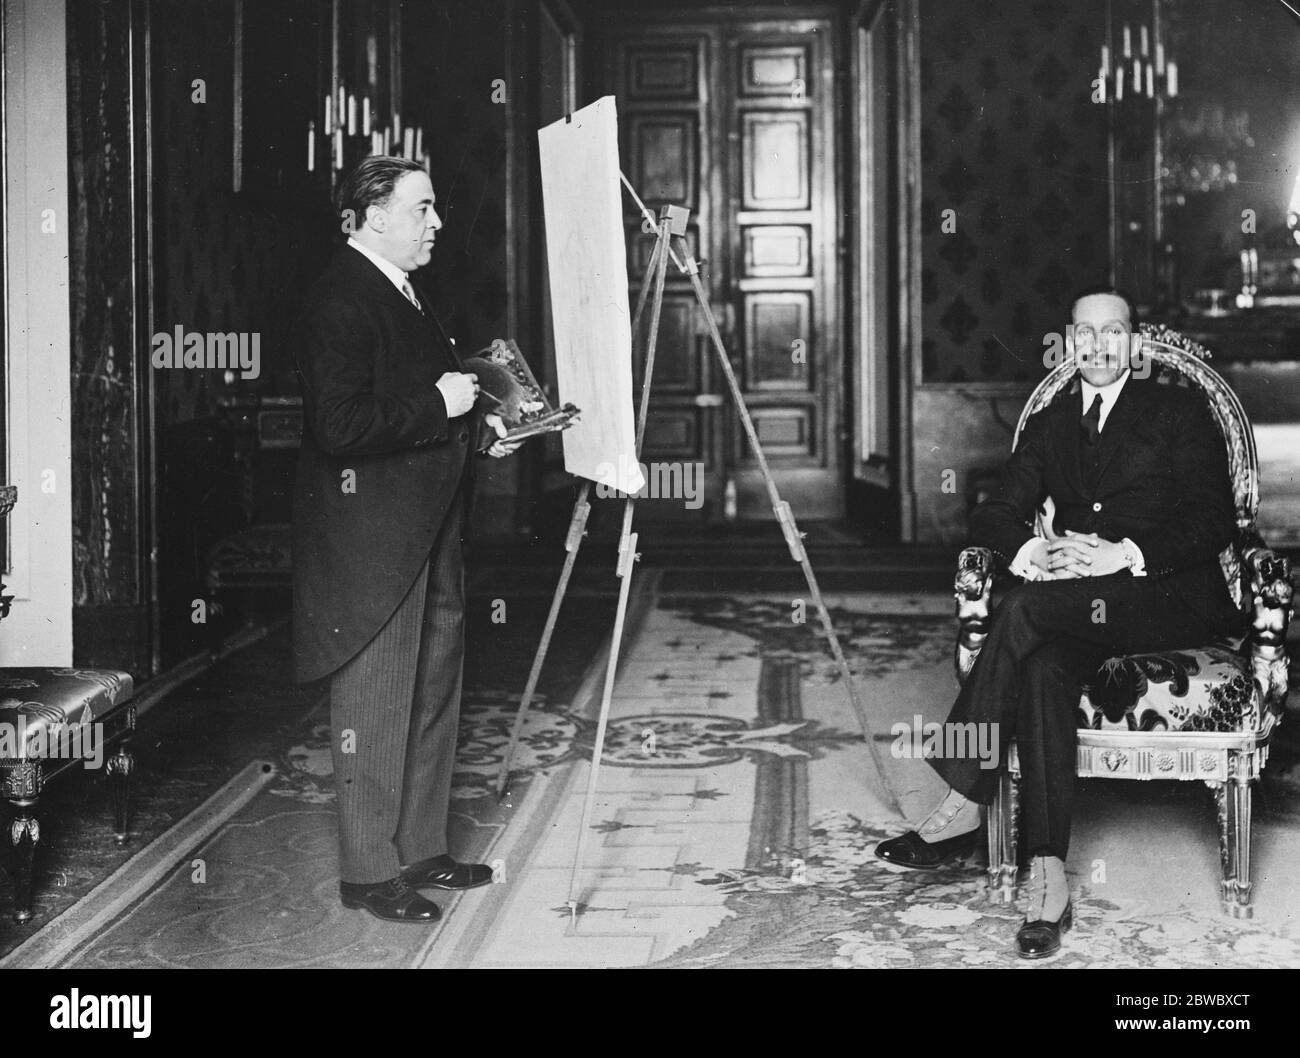 König von Spanien posiert für sein Porträt. Der König von Spanien posiert für sein Porträt an den berühmten Maler, SR Lopez Mezquita, der eine Ausstellung seiner Werke in den Vereinigten Staaten haben. Januar 1926 Stockfoto